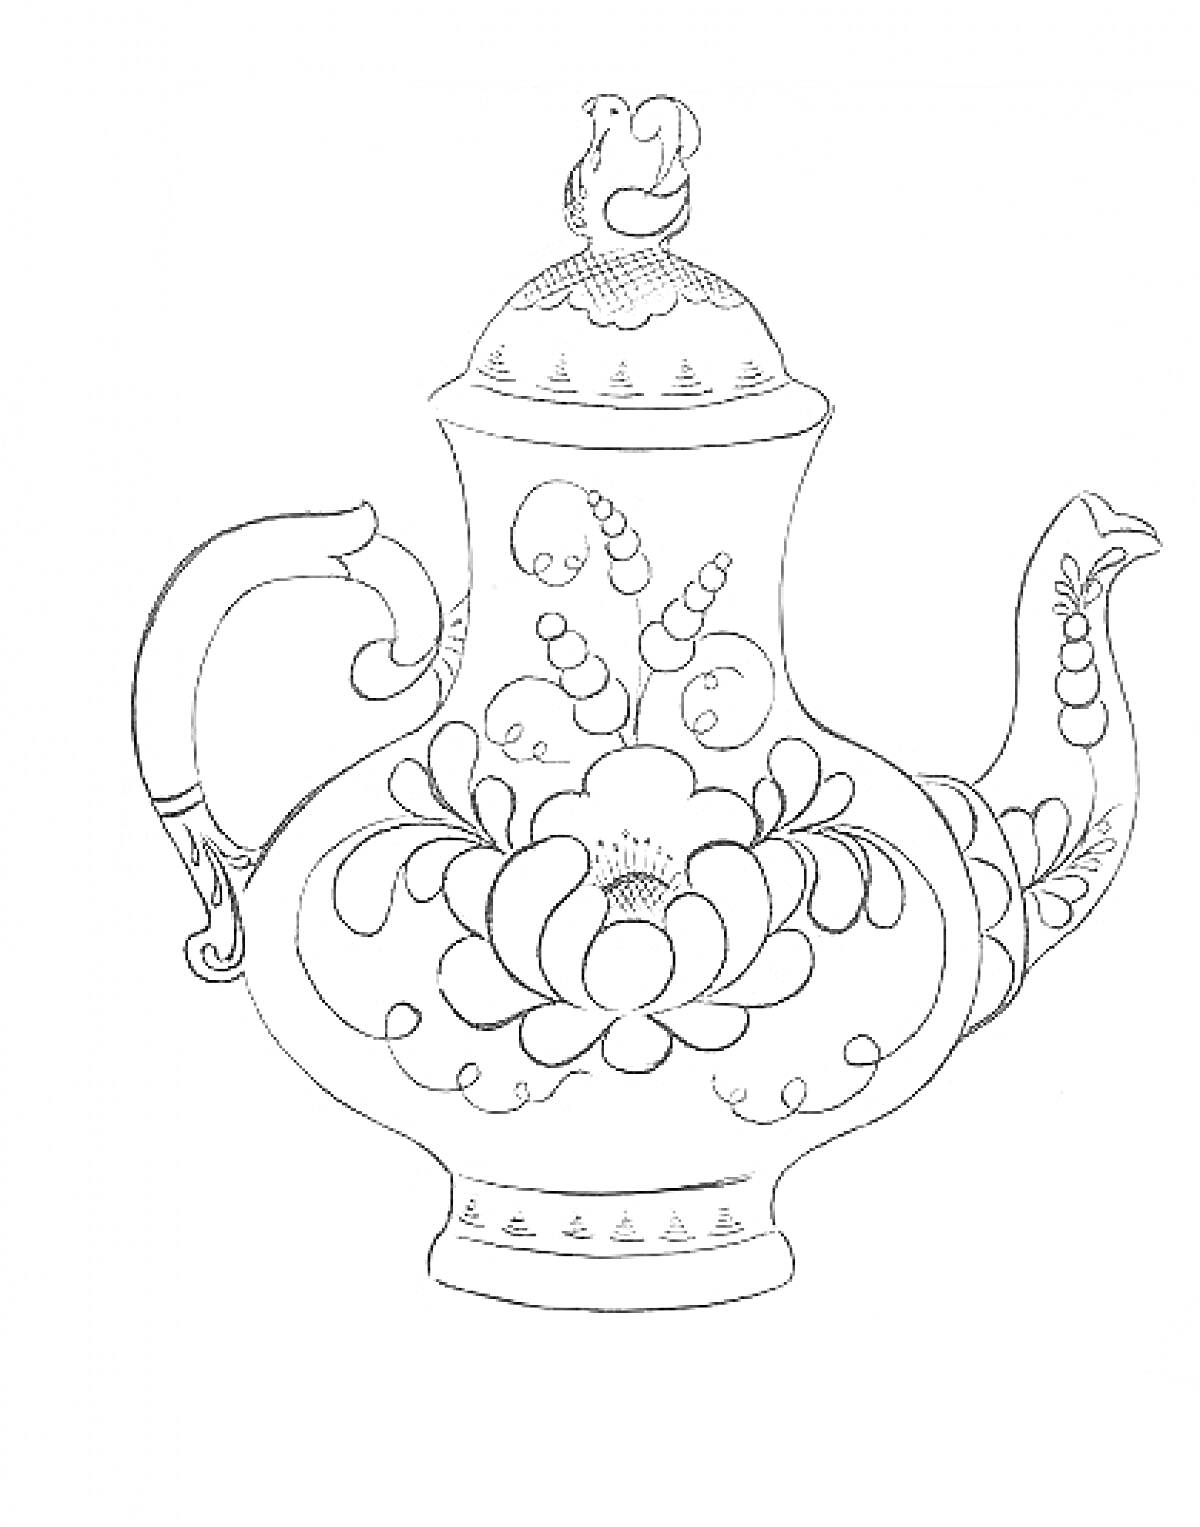 Раскраска Заставка с гжельским чайником с птицей на крышке, украшенным цветочным орнаментом